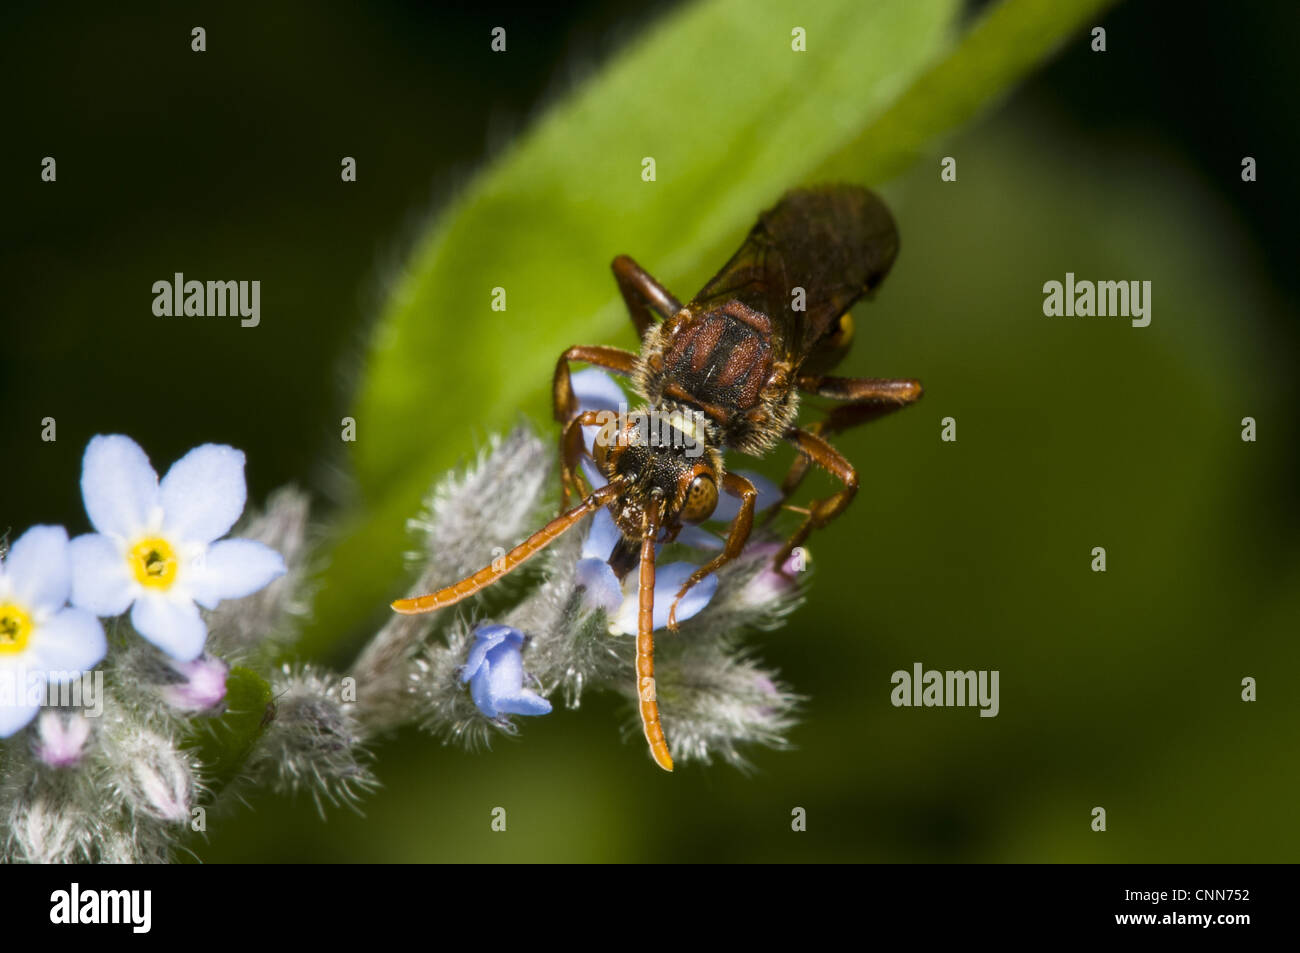 Nomad (abeille Nomada sp.), adultes se nourrissent de forget-me-not (Myosotis sp.) fleur, Piscines Cliffe réserve RSPB, Kent, Angleterre, mai Banque D'Images